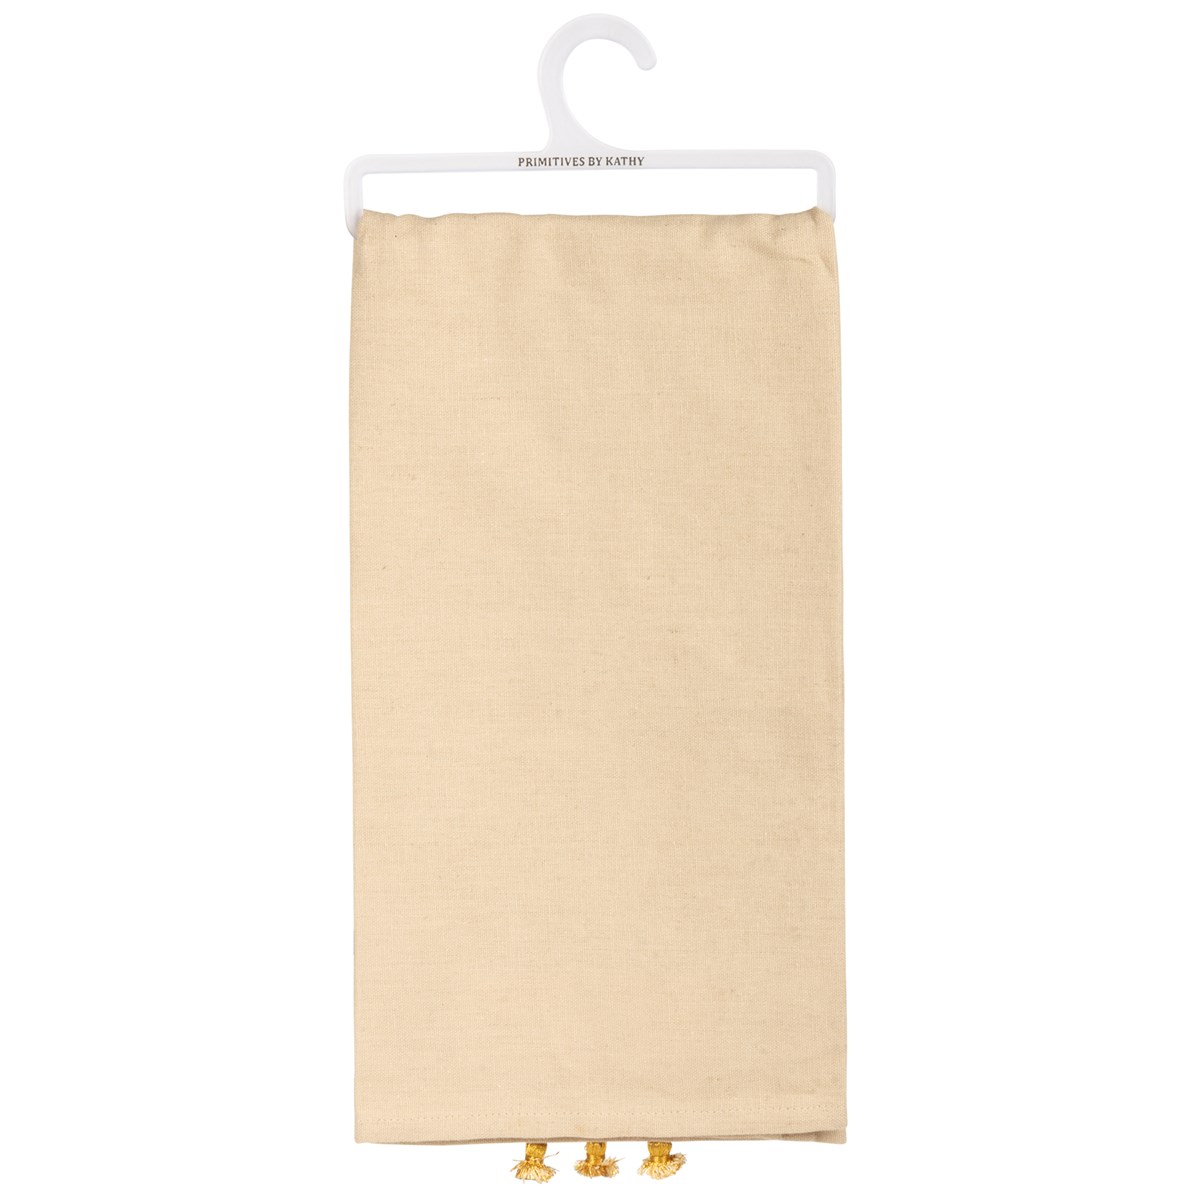 Be Kind Kitchen Towel - Cotton, Linen